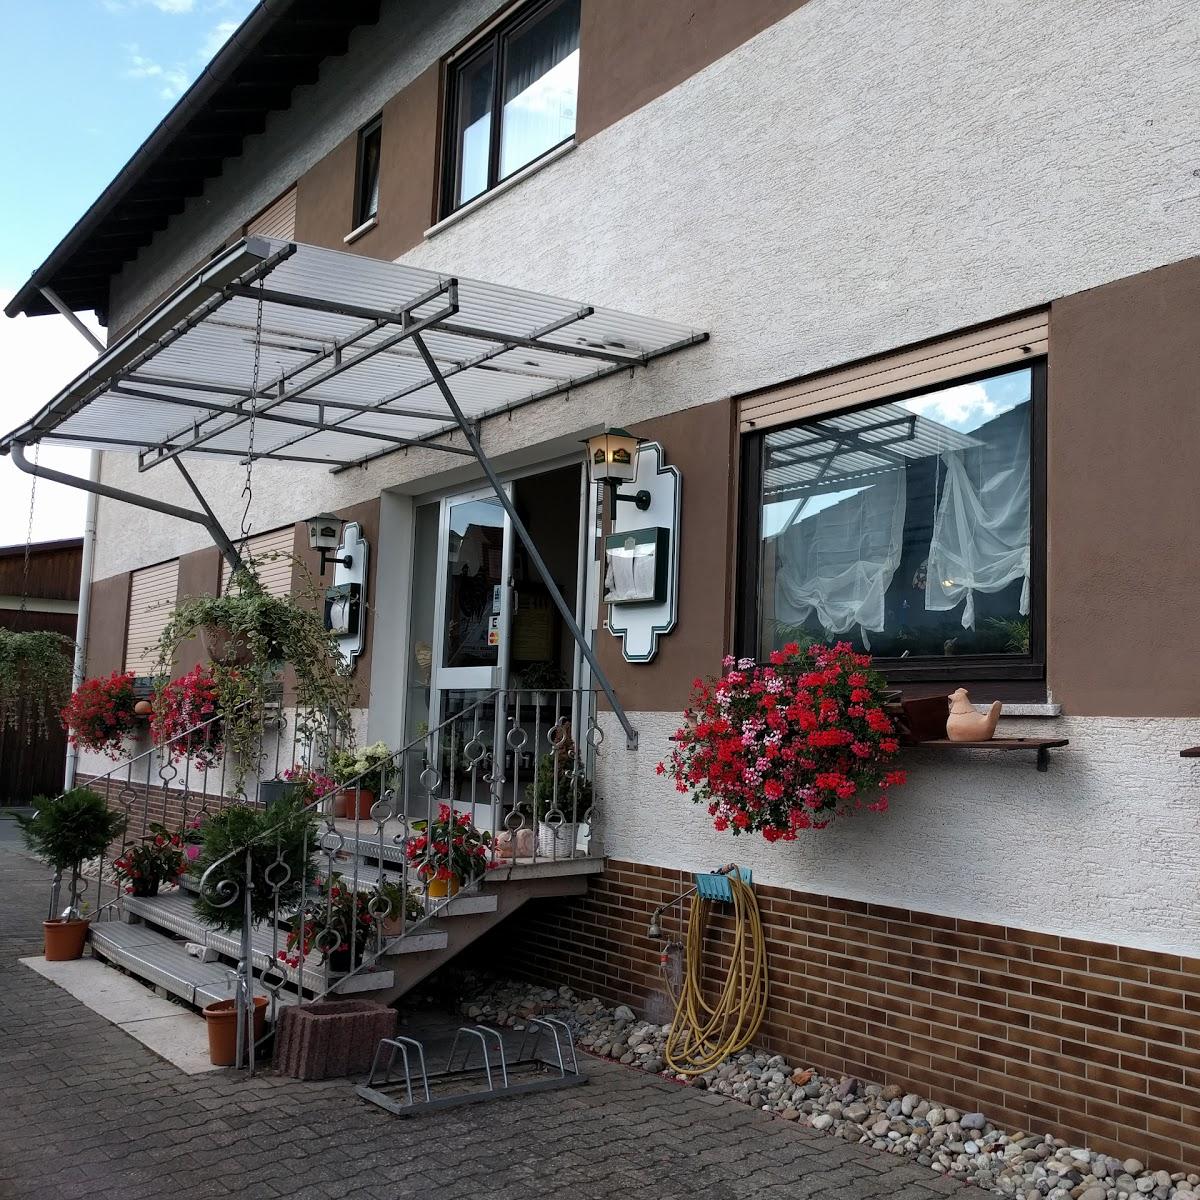 Restaurant "Zum Gickelswirt" in Brensbach